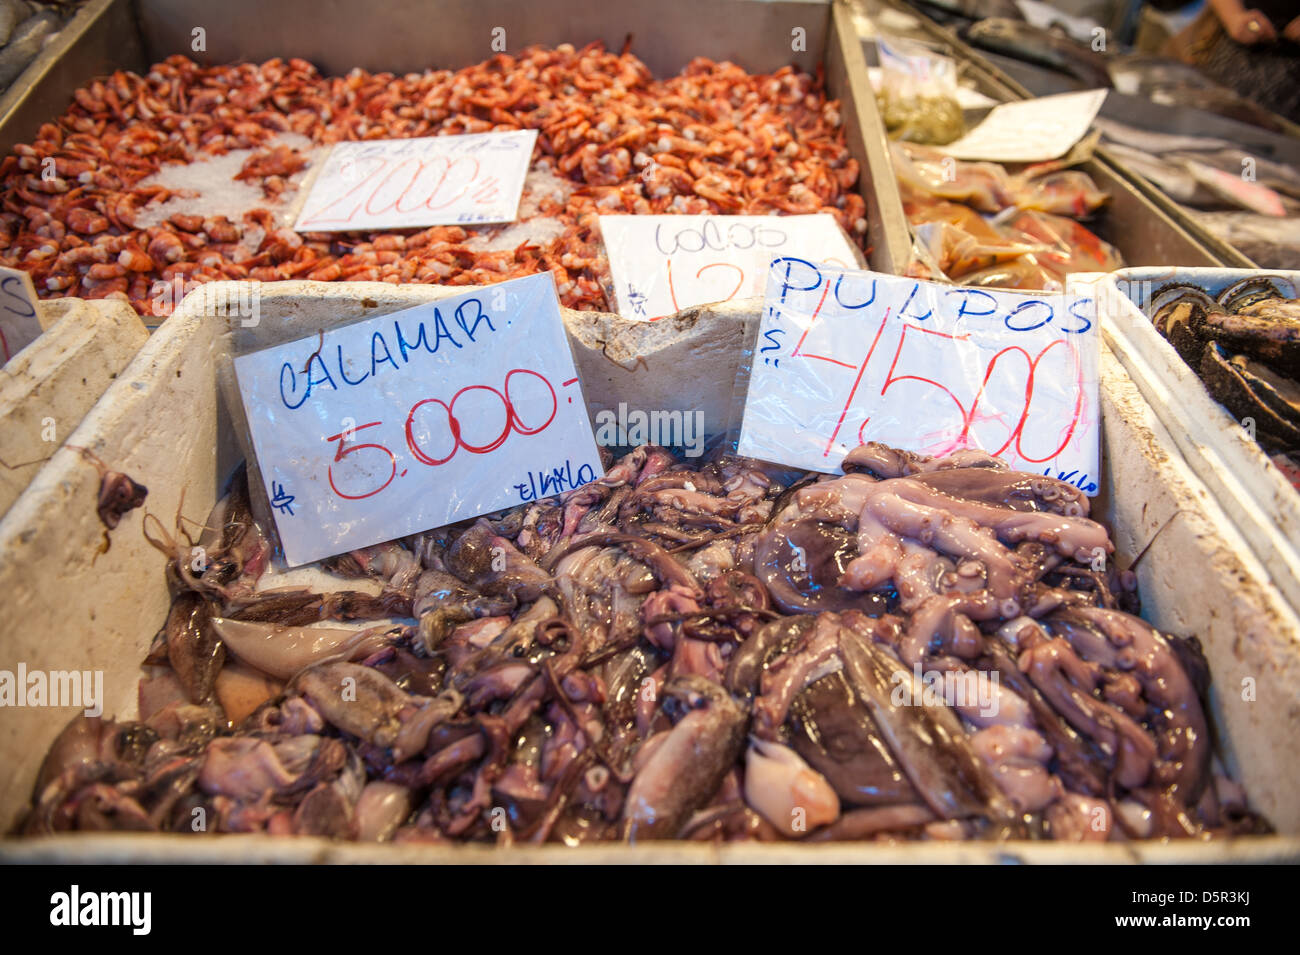 Mercado Central, einer der größten frische Meeresfrüchte Chiles Märkte Santiago Chile Stockfoto